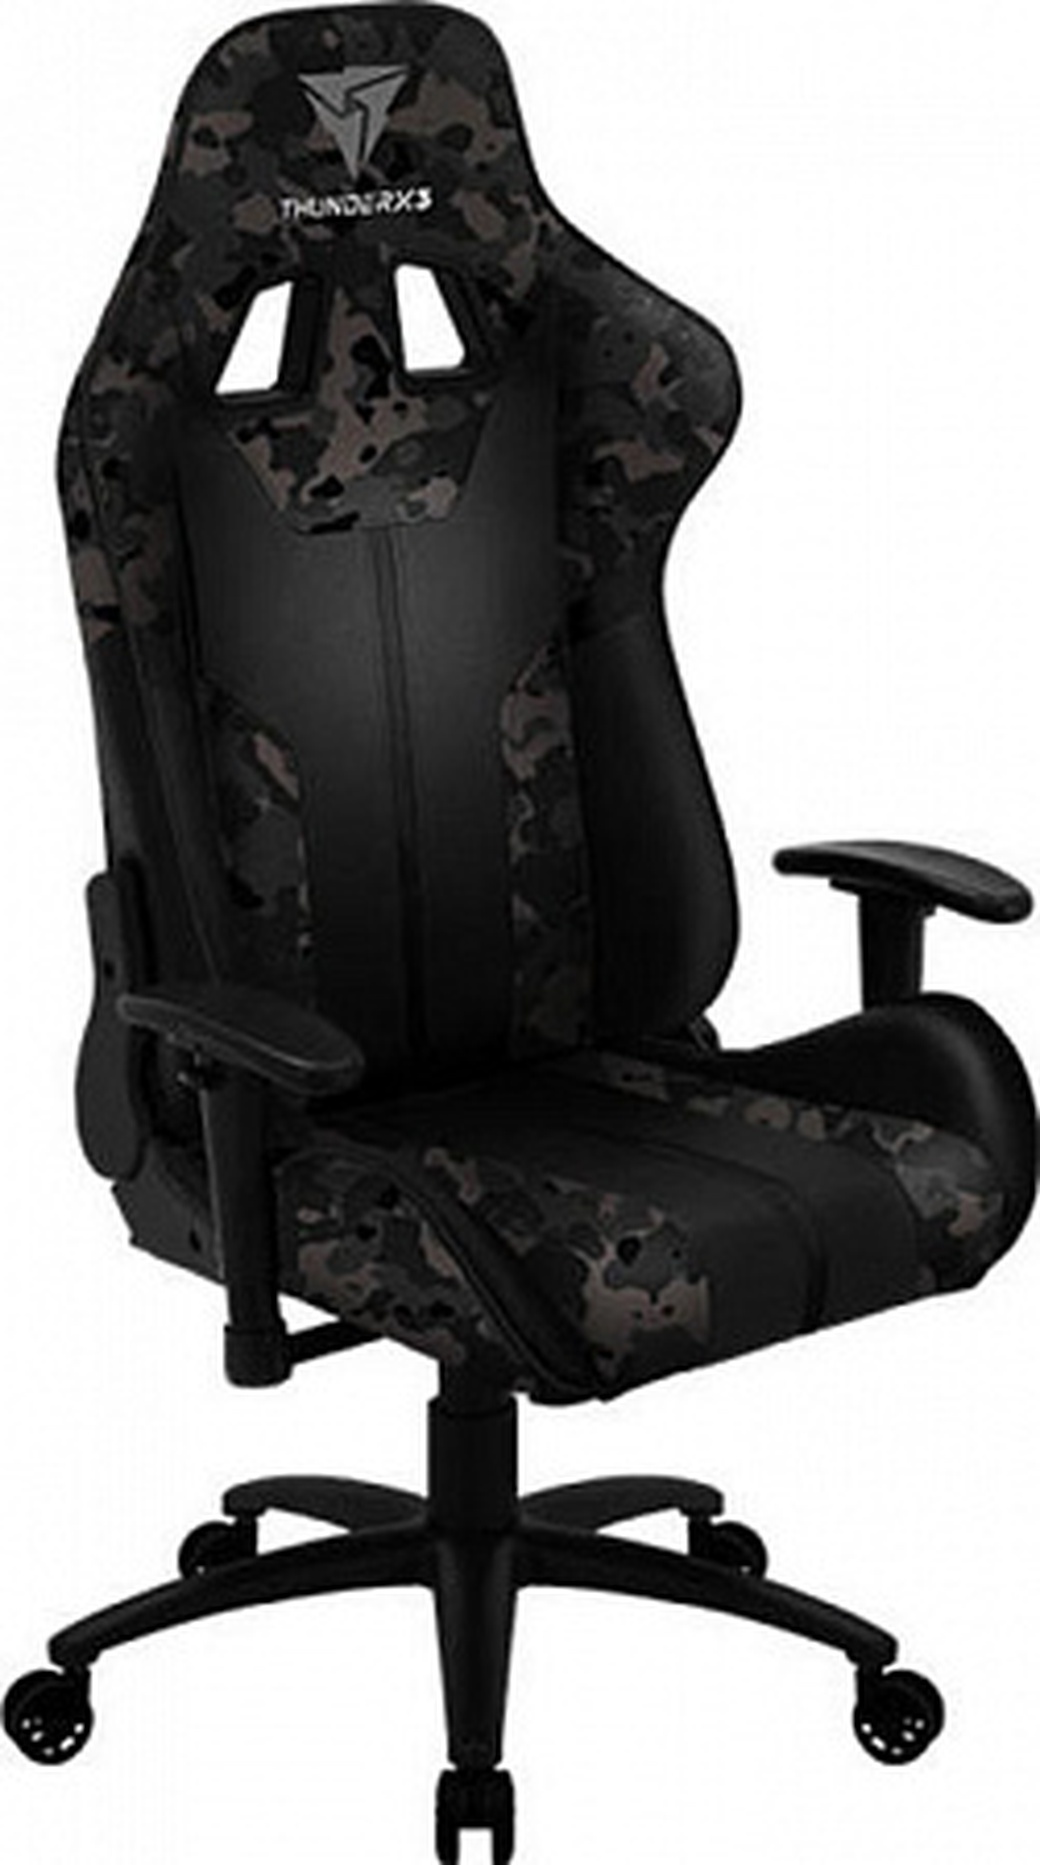 Игровое кресло THUNDERX3 BC3-CGY camo/grey до 150 кг, цвет: серый/военный камуфляж/черный фото